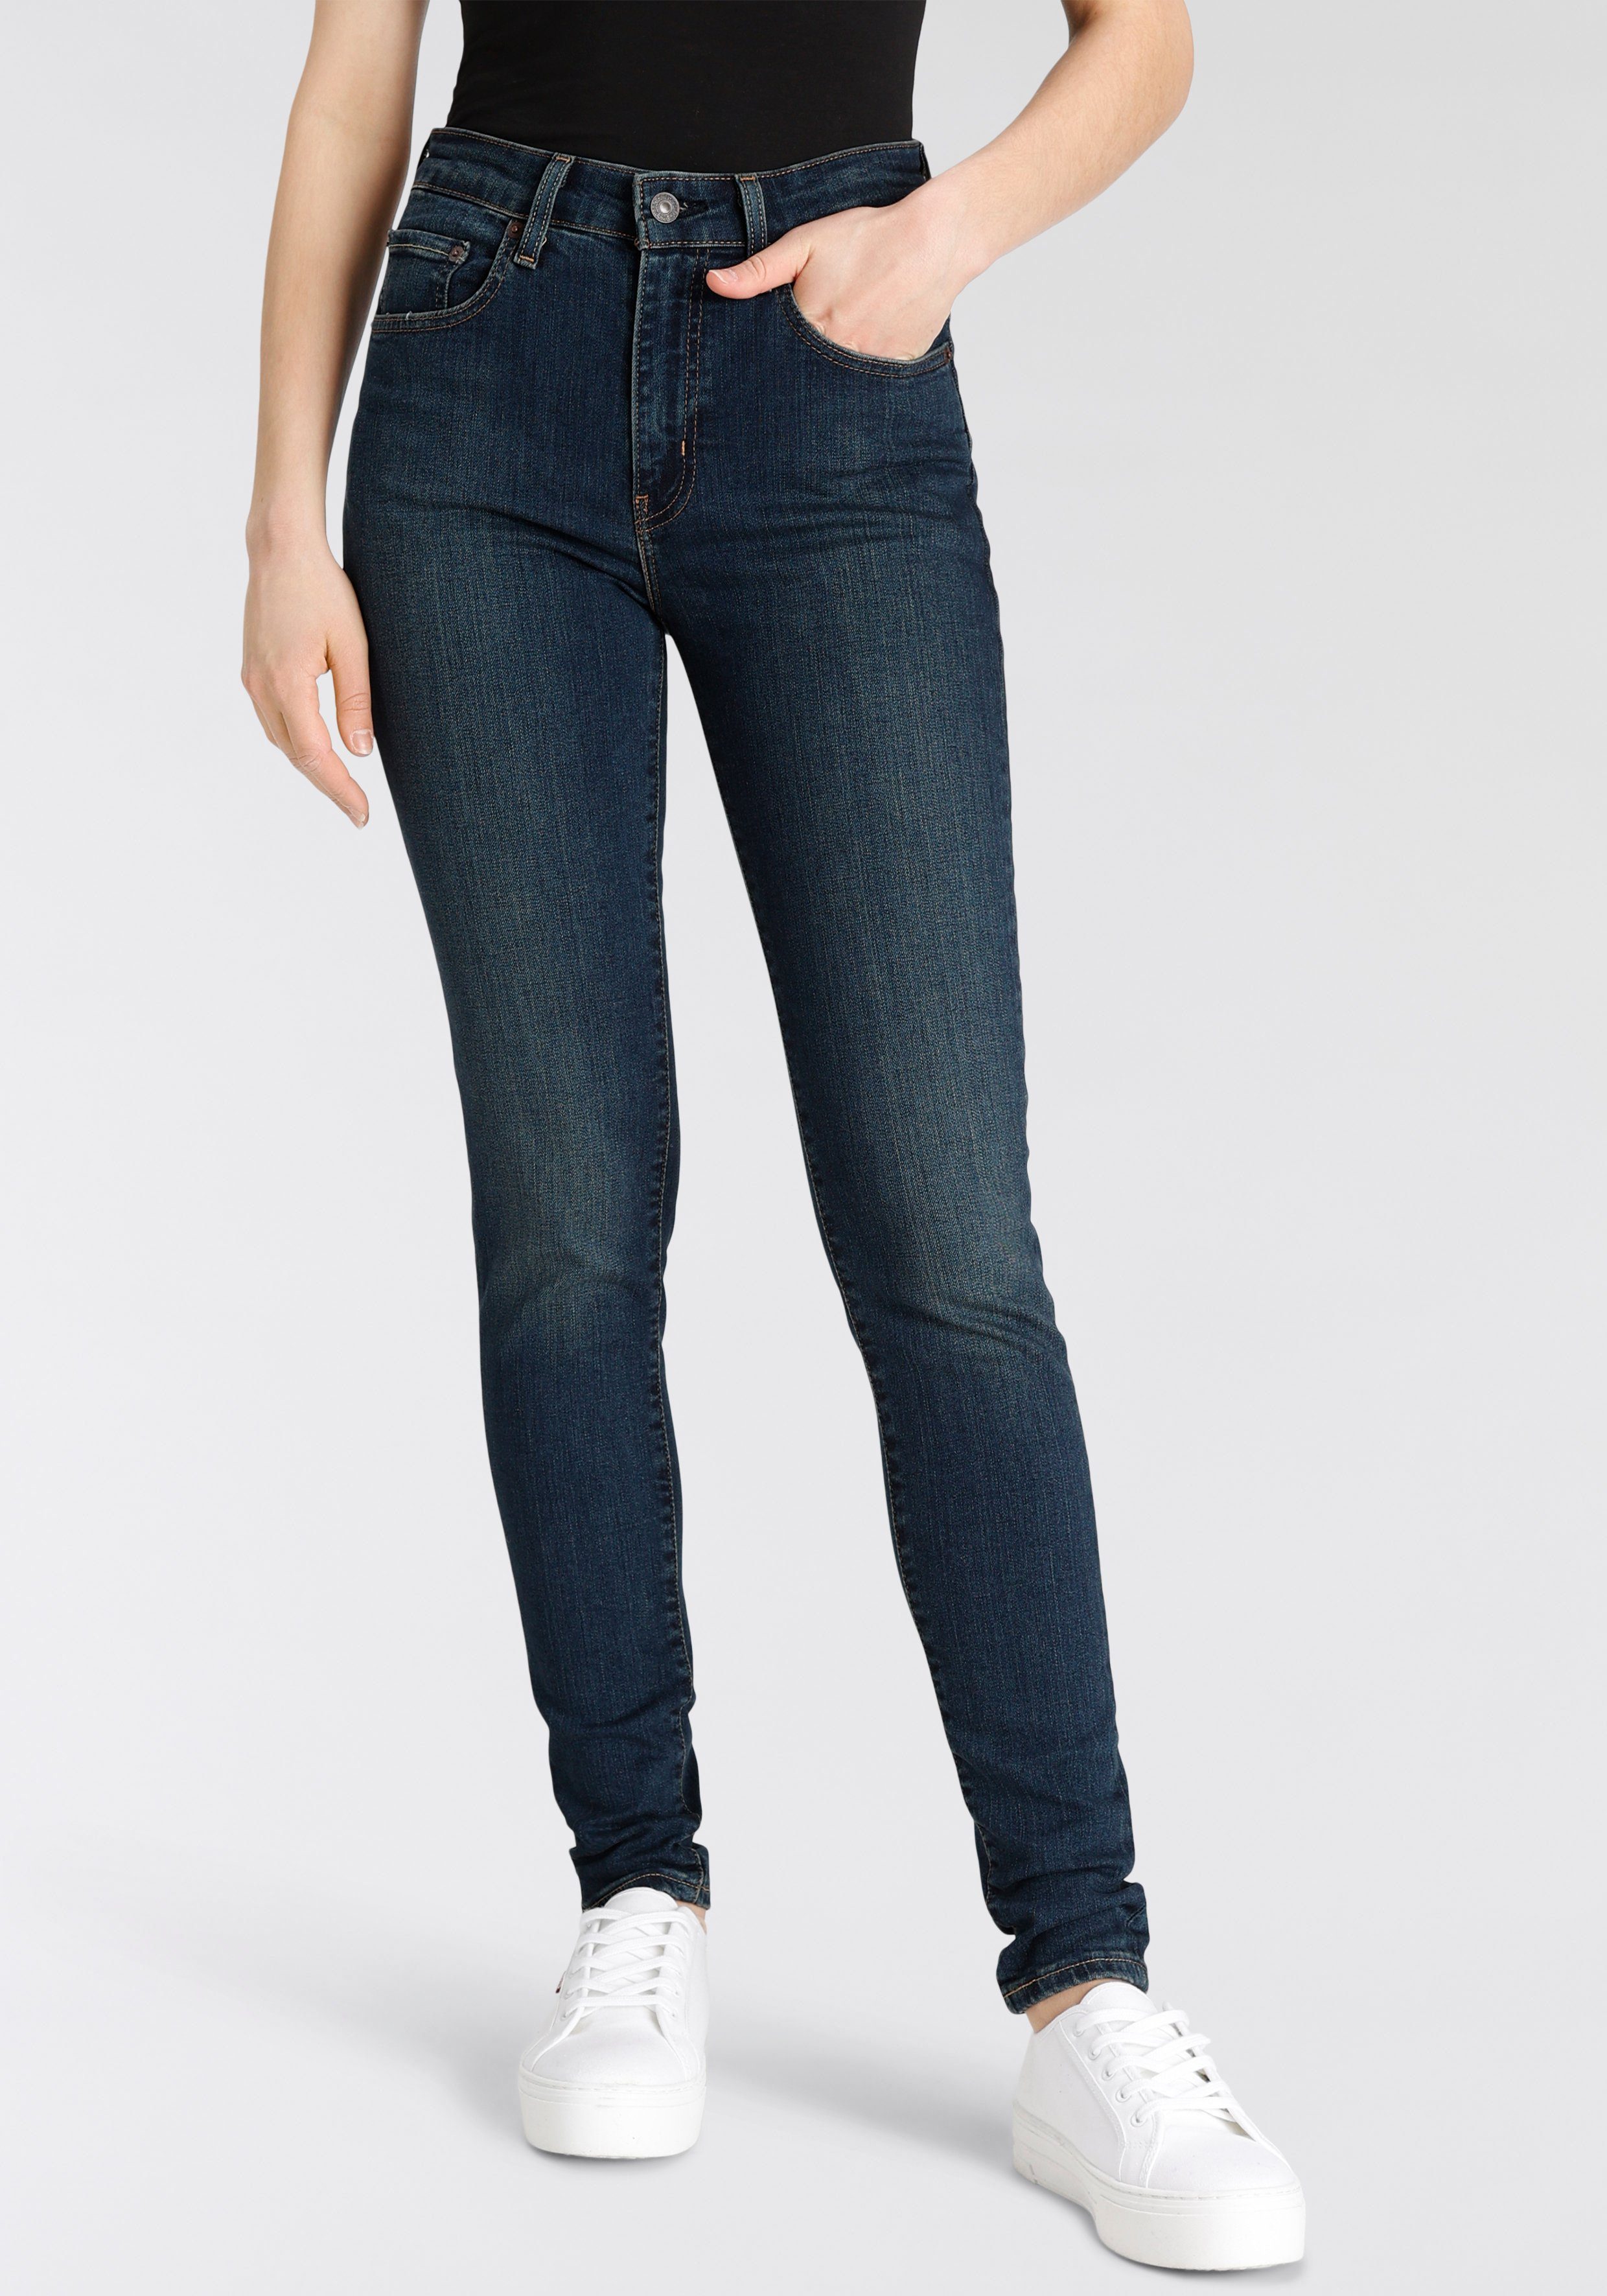 Neue Artikel sind eingetroffen 1 Levi's® Skinny-fit-Jeans 721 High Bund indigo rise skinny raw denim hohem mit